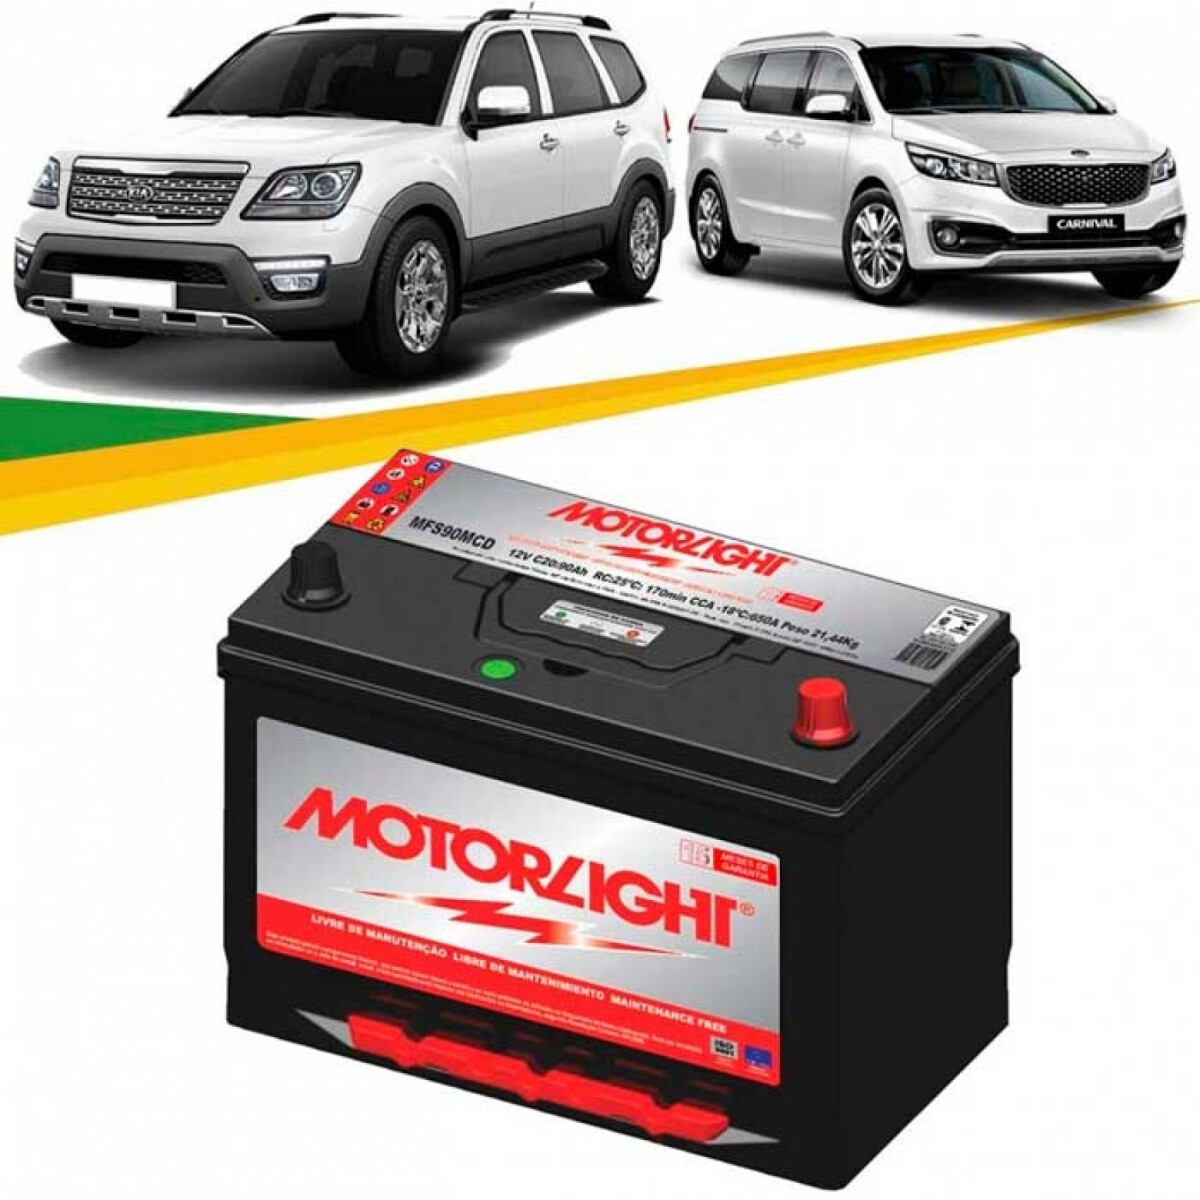 Bateria Motorlight - 90amp Polo Positivo Derecho 